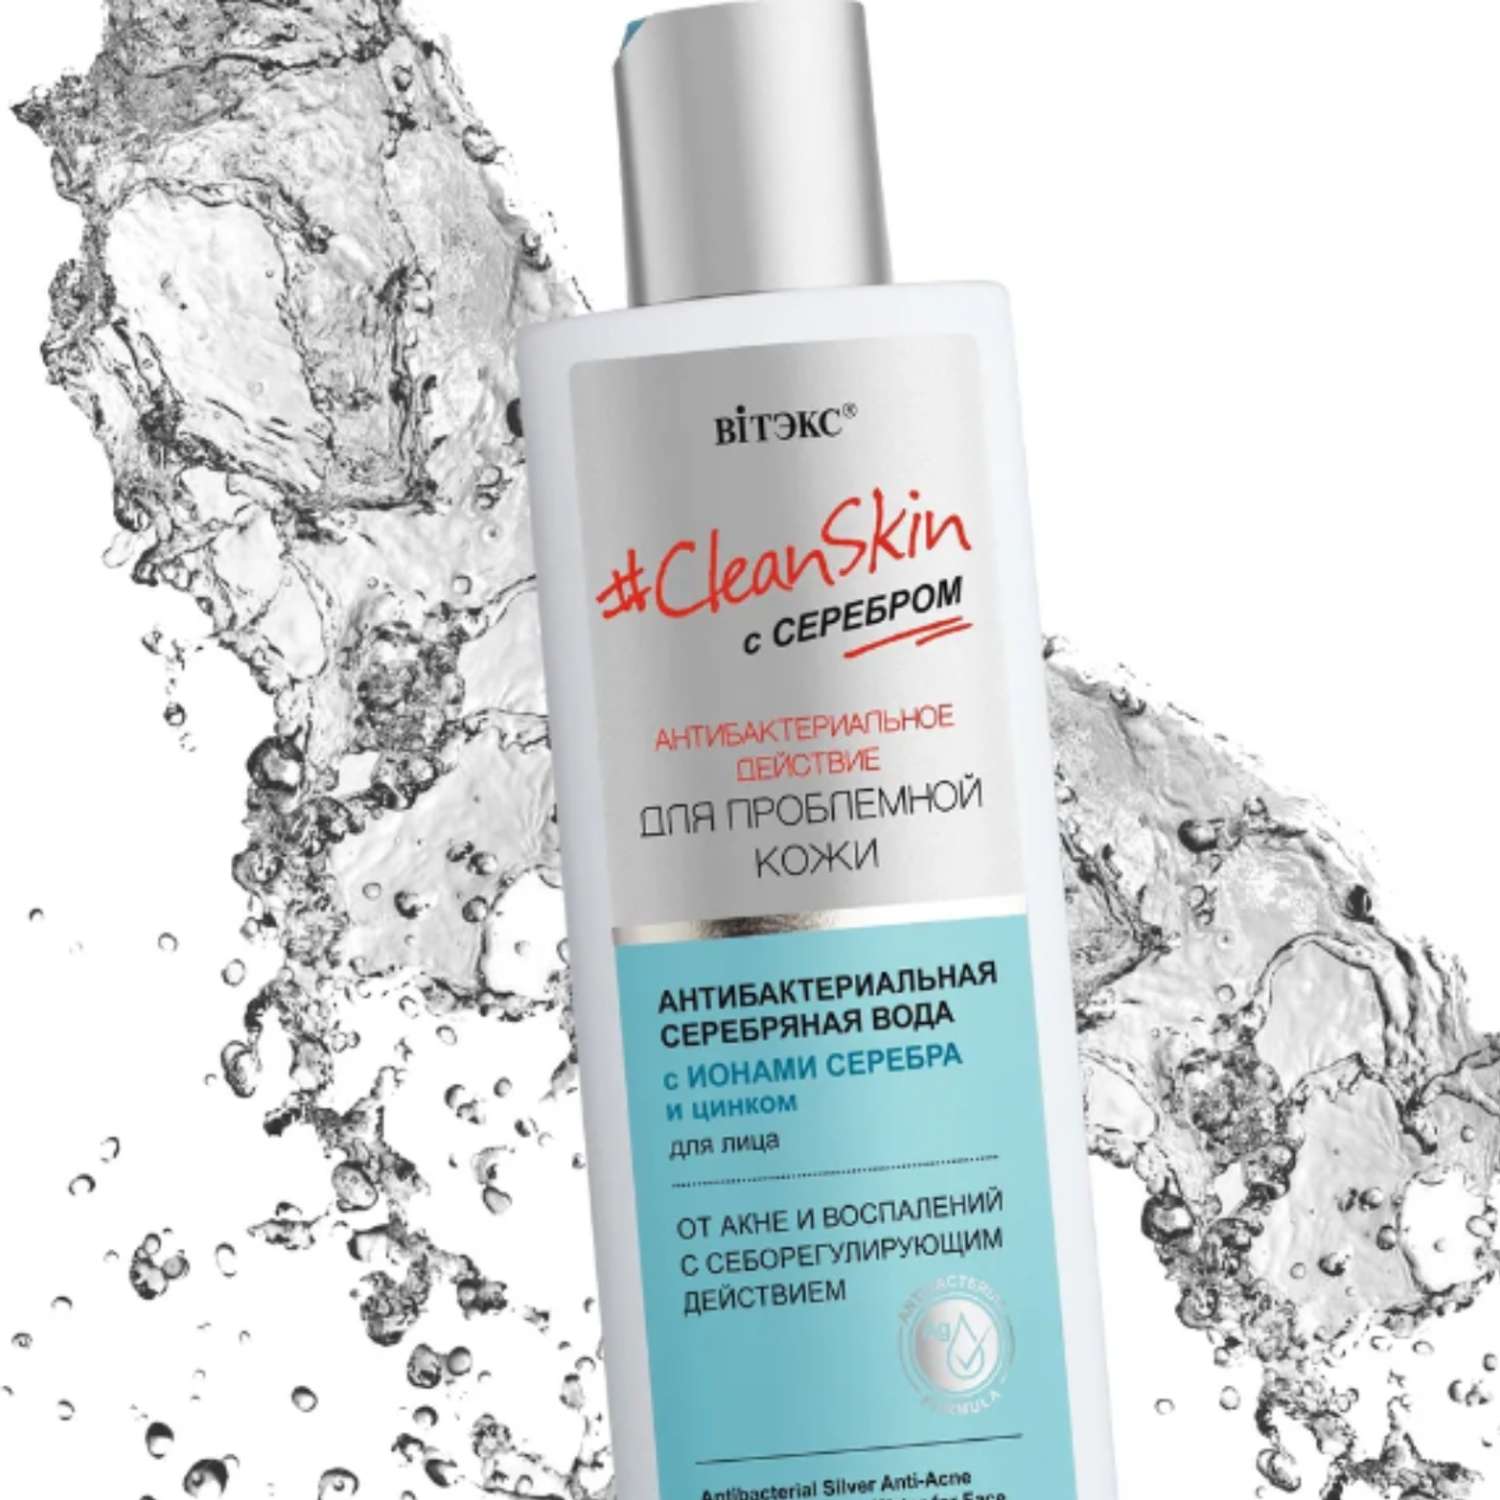 Вода для лица ВИТЭКС clean skin антибактериальная серебряная с цинком от акне и воспалений150мл - фото 2